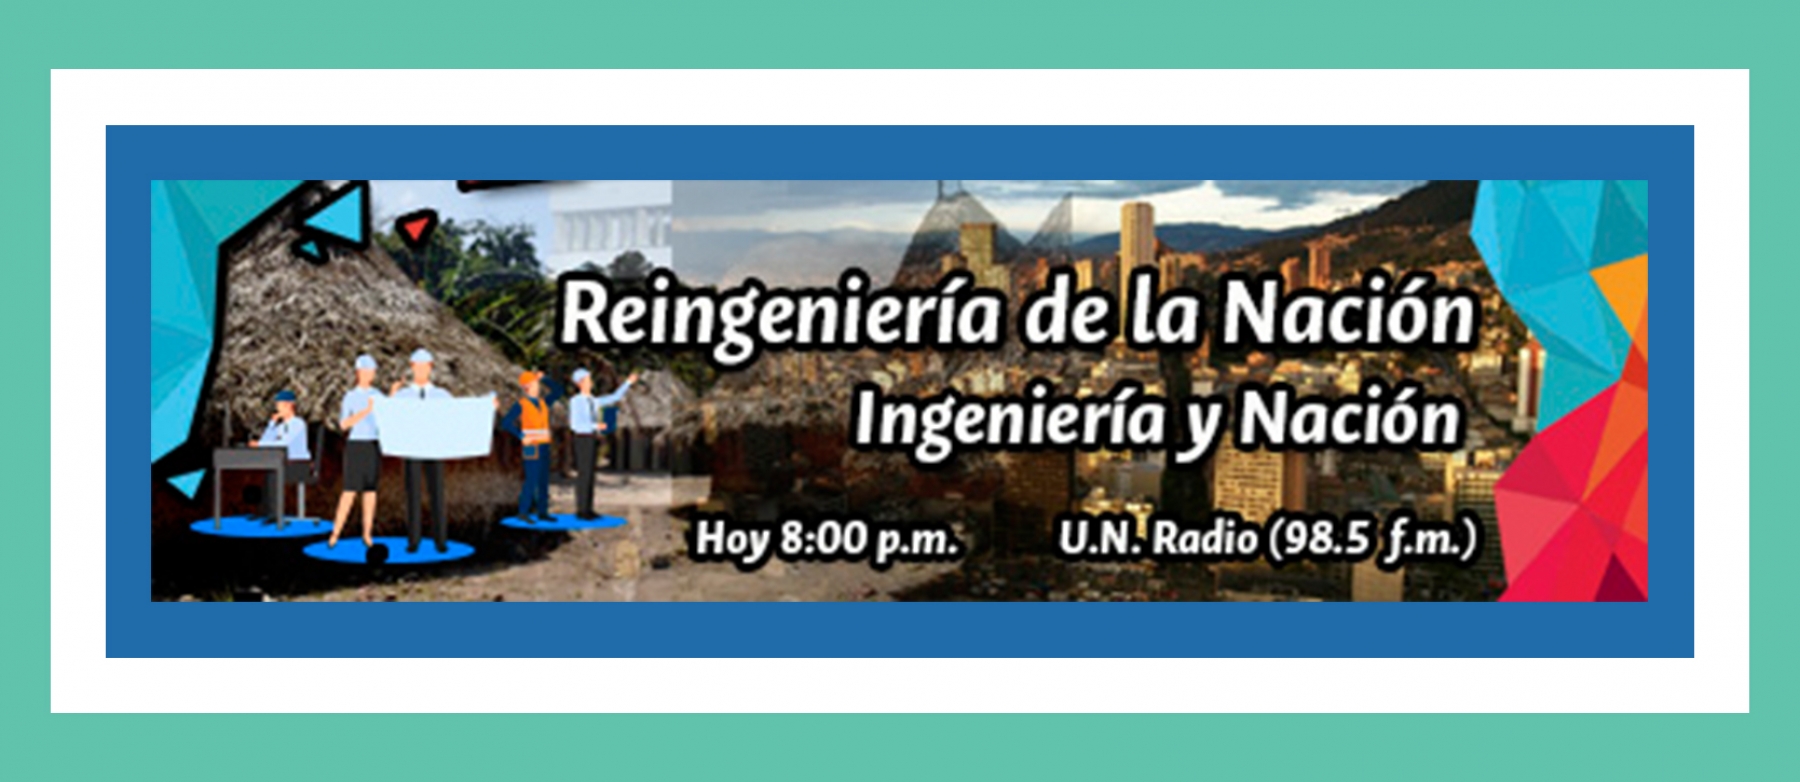 Hoy en Ingeniería y Nación: Reingeniería de la Nación VII- Educación en ingeniería